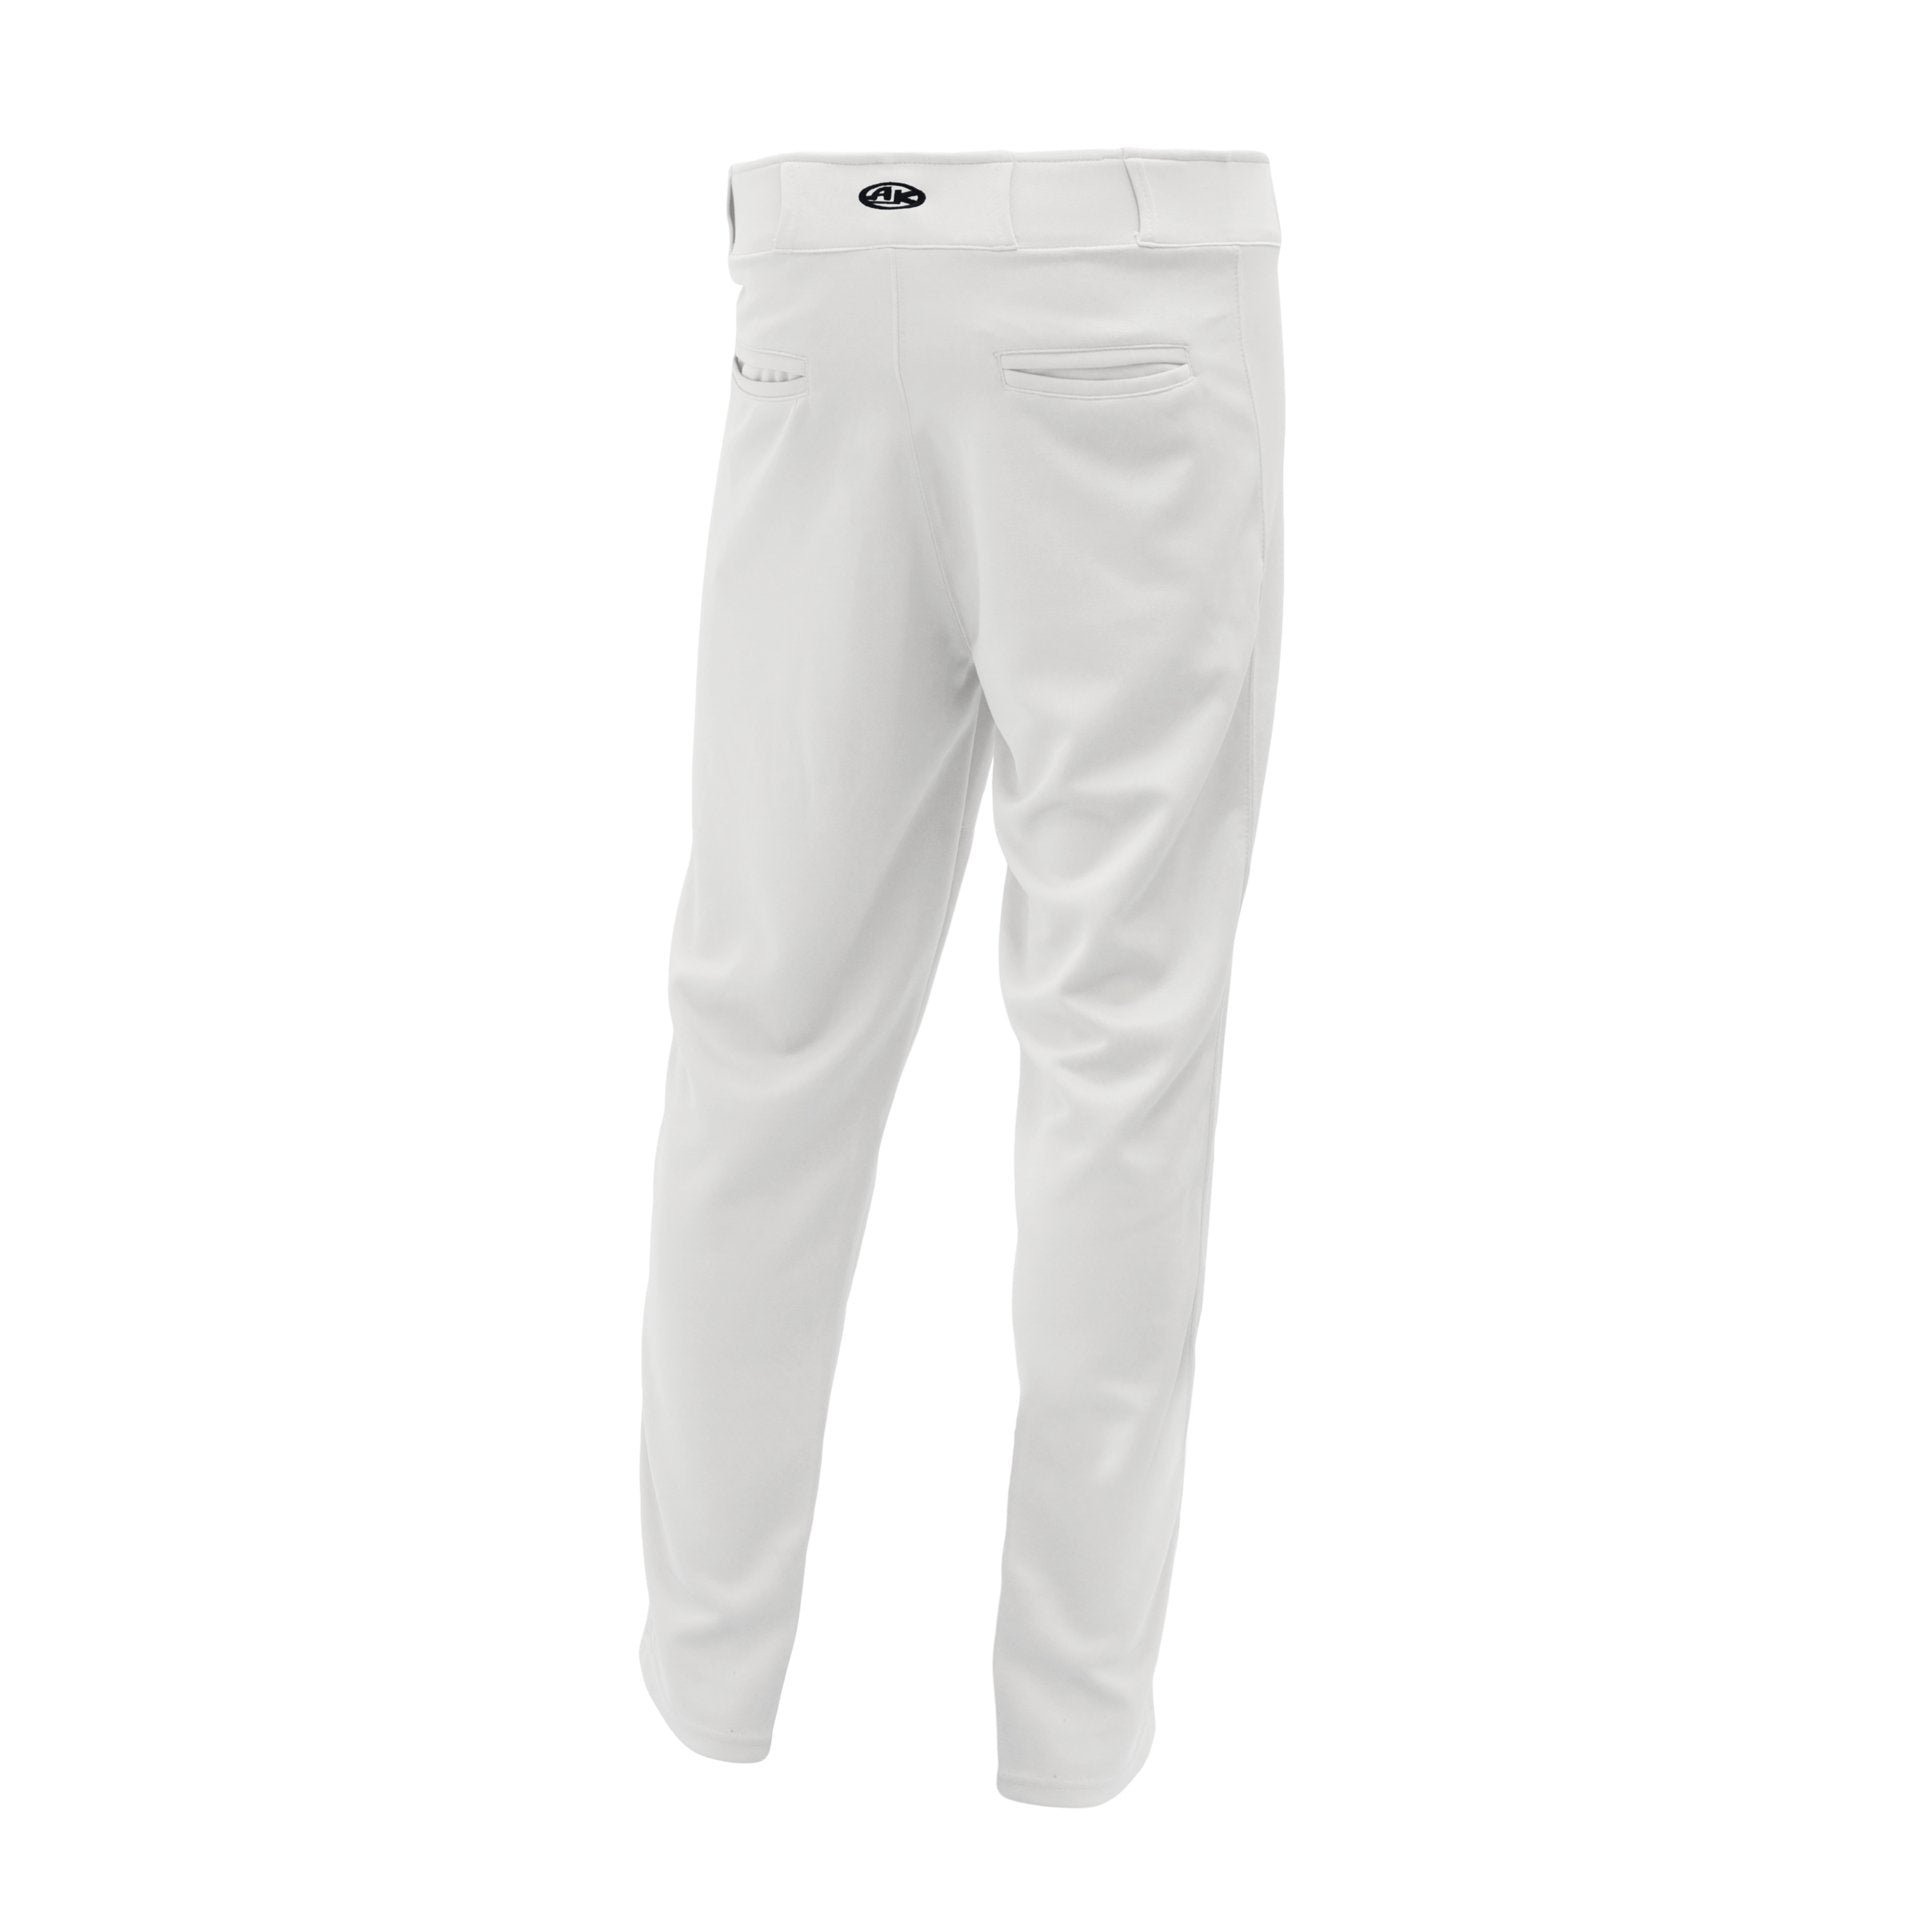 Premium Baseball Pants, Hemmed Bottom, White, ba1390-000, back